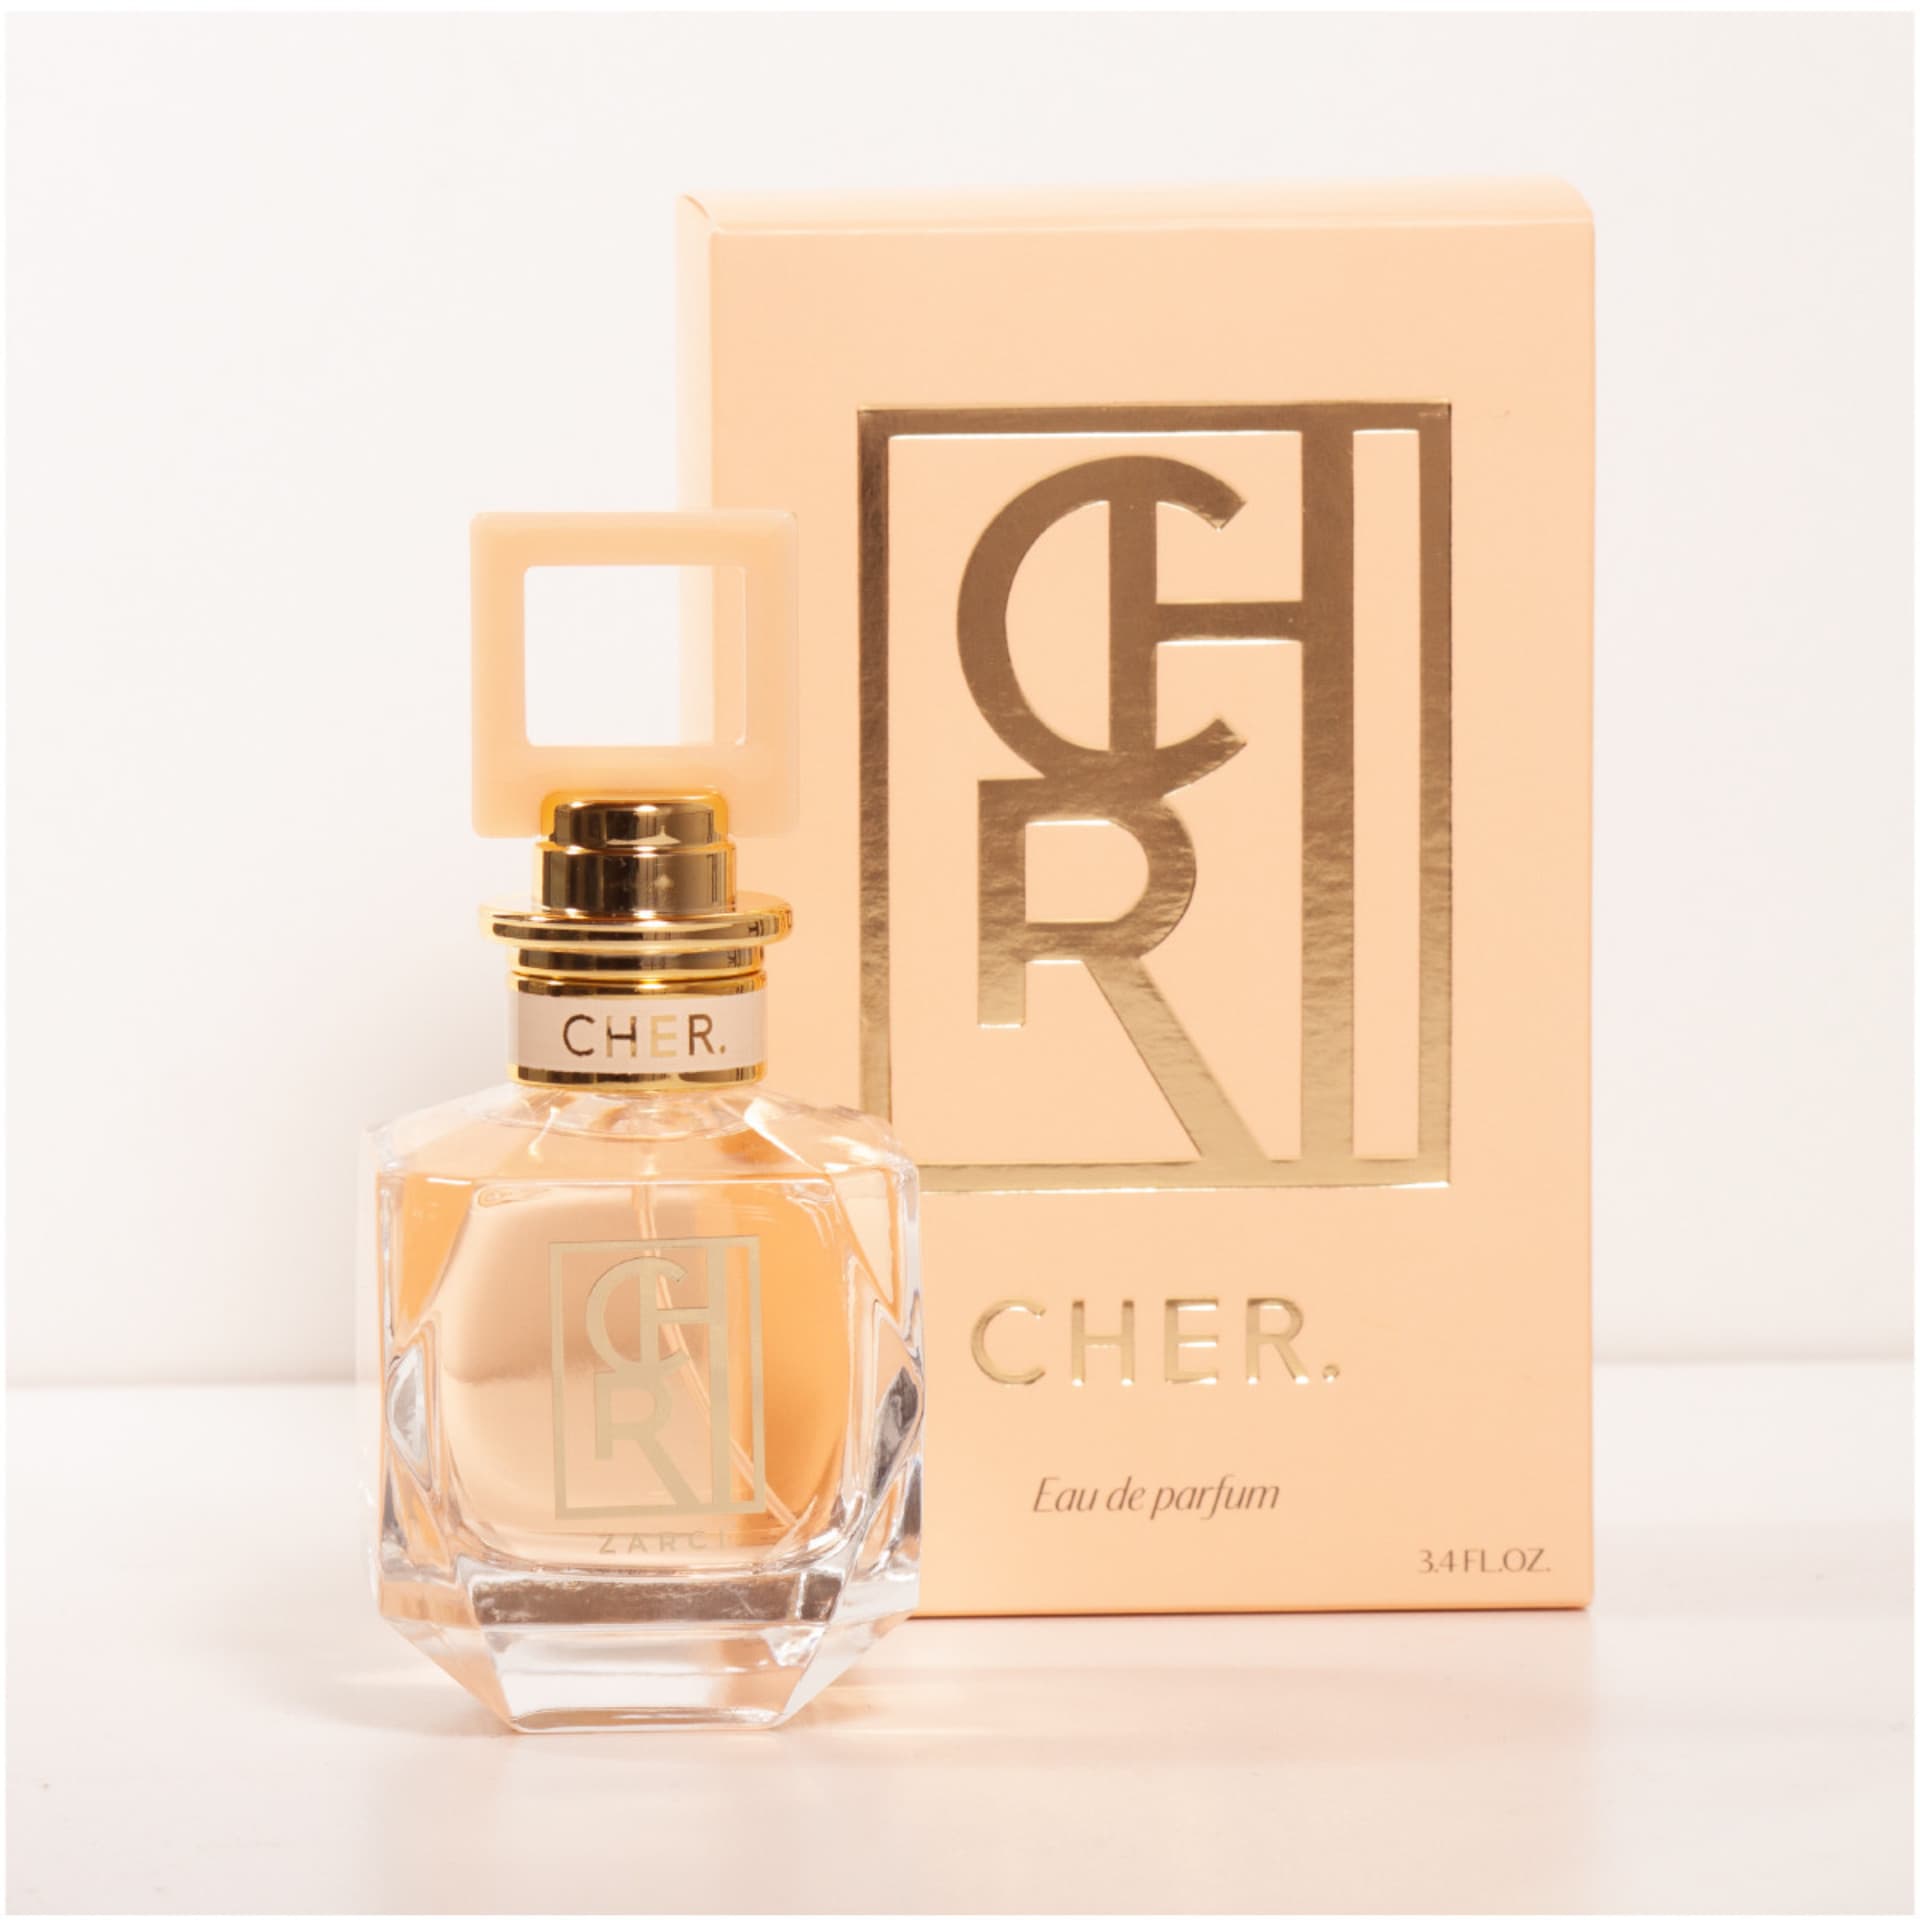 Zarci y Onyx dos nuevos perfumes para mujeres de Maria Cher